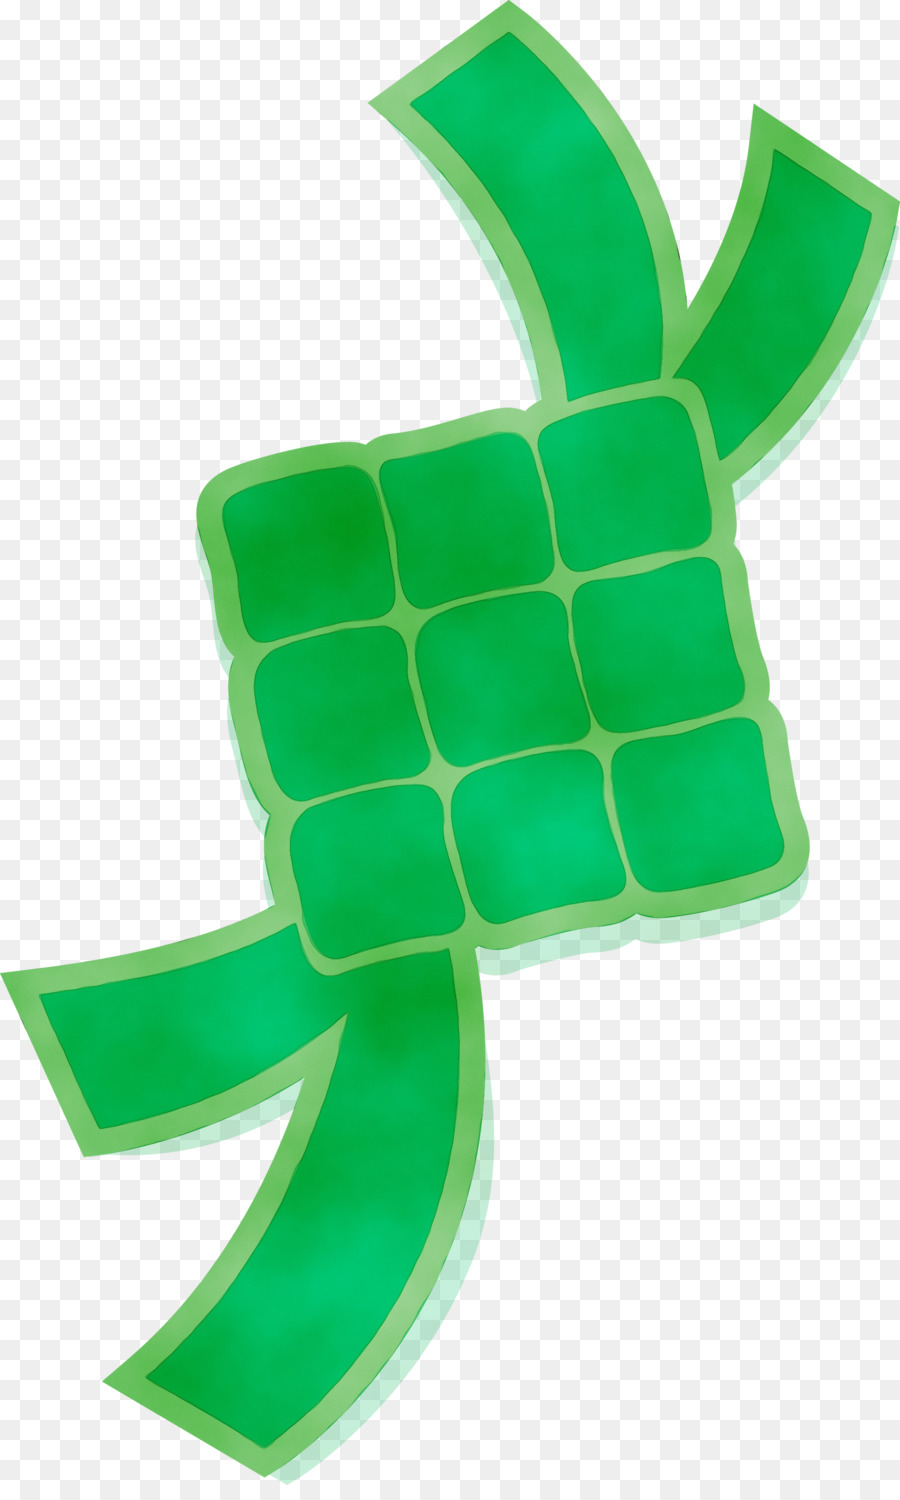 green meter symbol